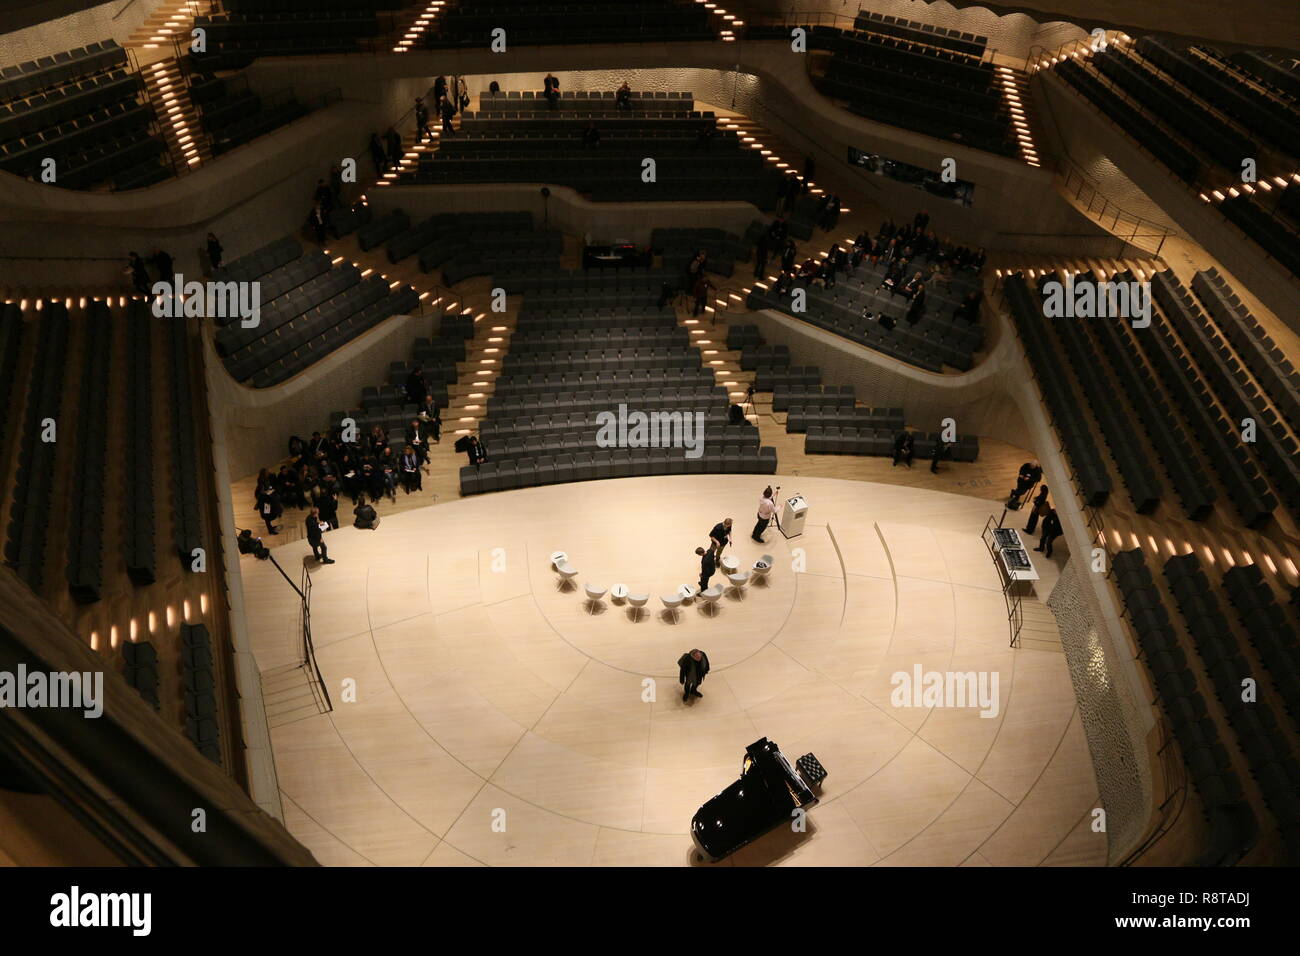 Elbphilharmonie Großer Saal: Blick vom höchsten Rang auf die Bühne Stock Photo